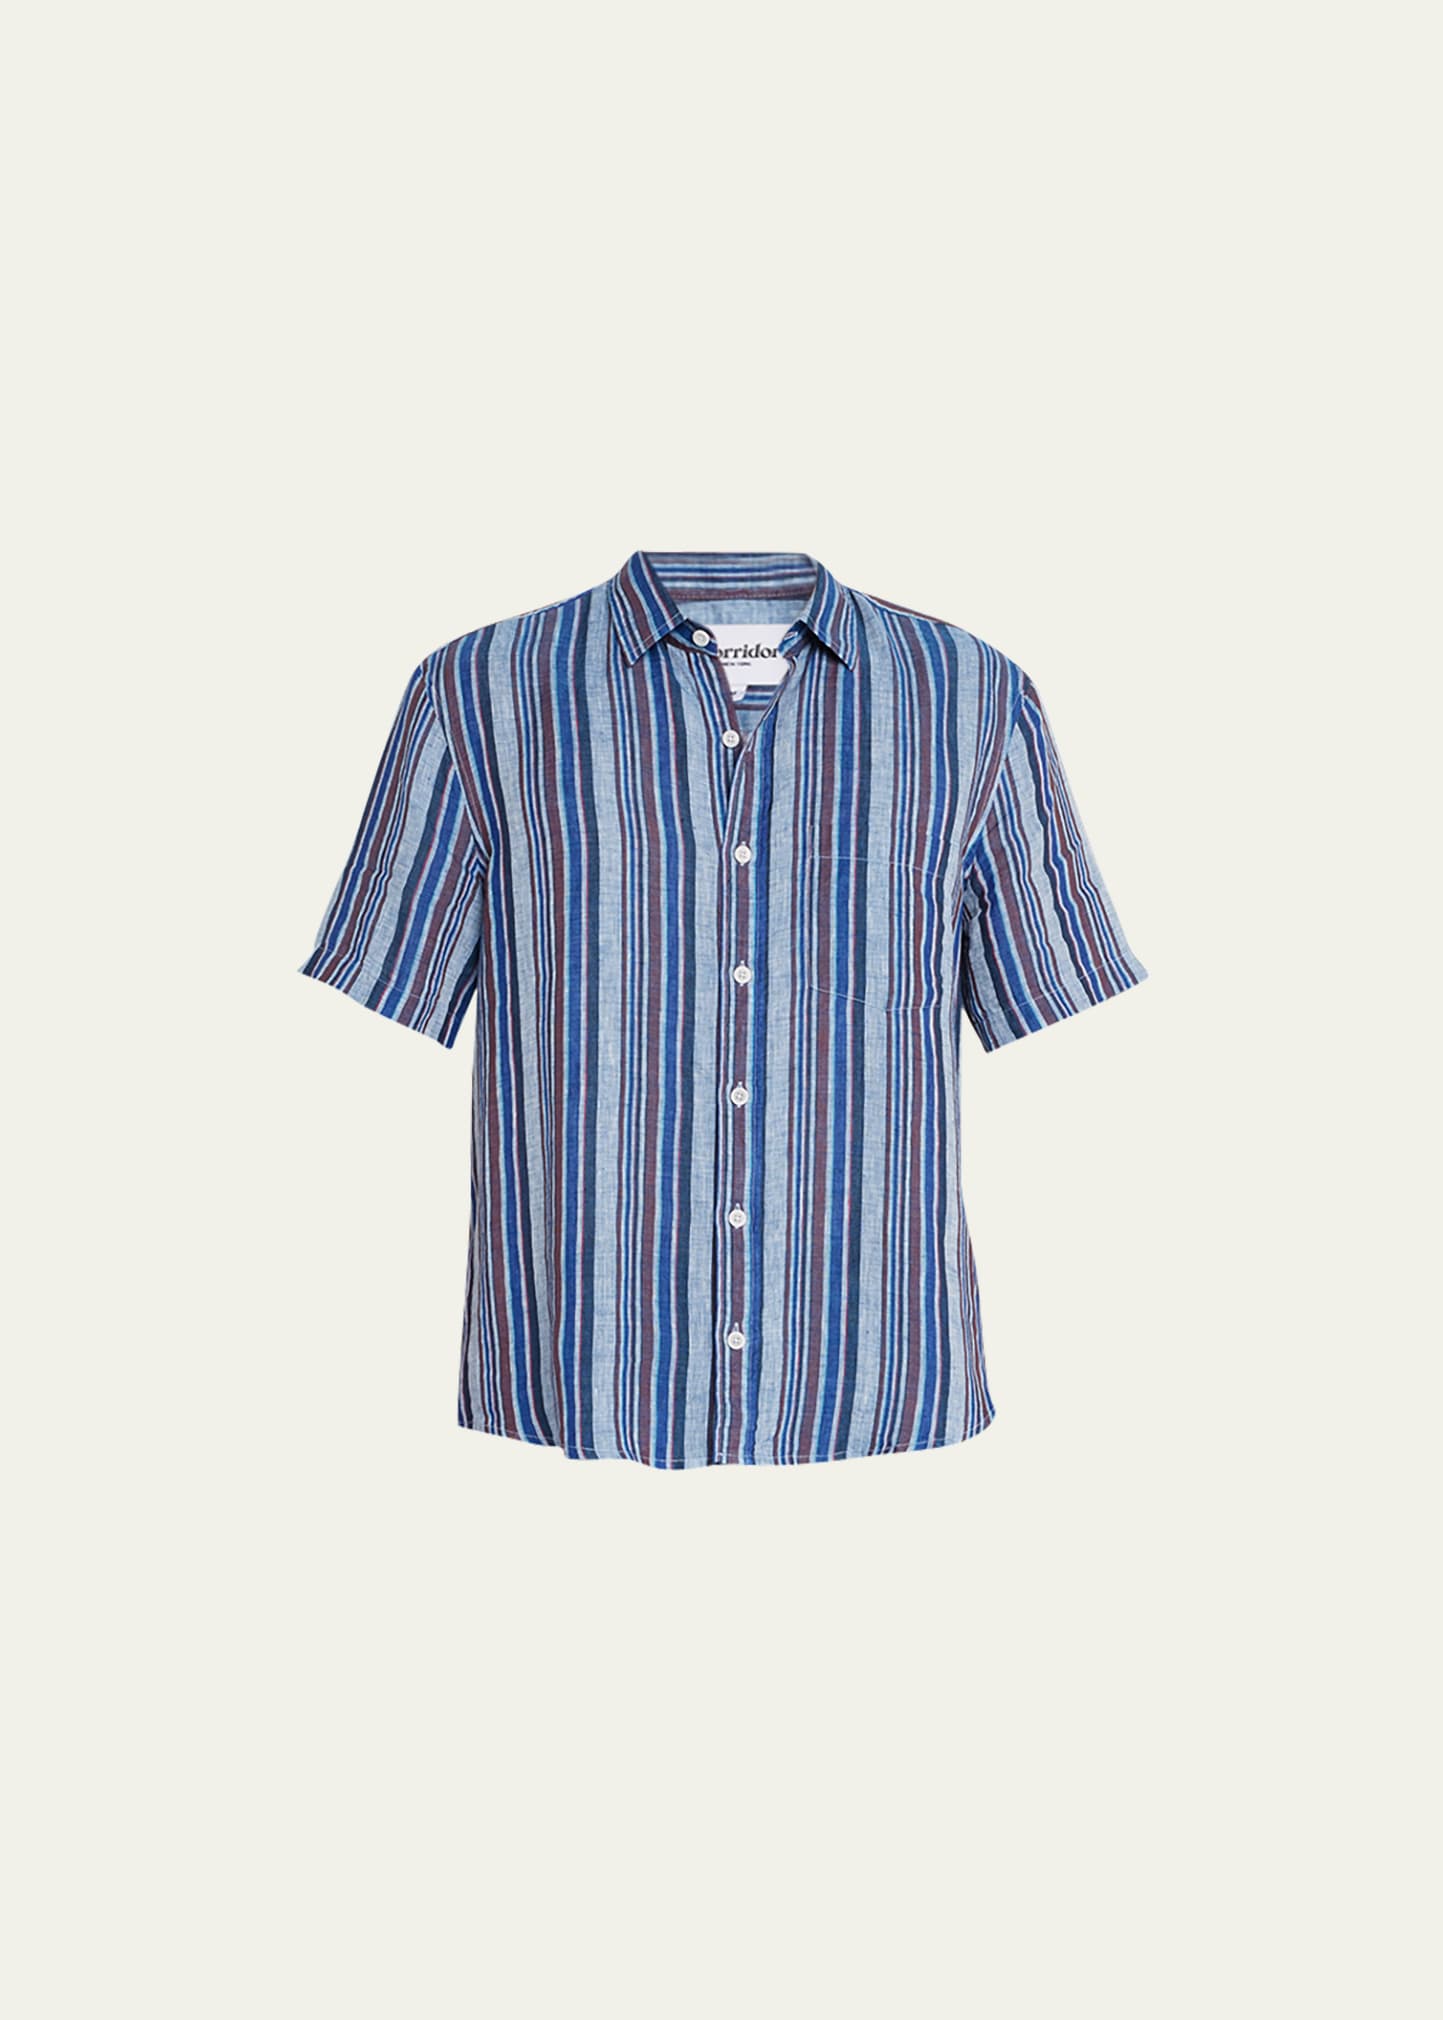 Men's Vertical Striped Linen Sport Shirt